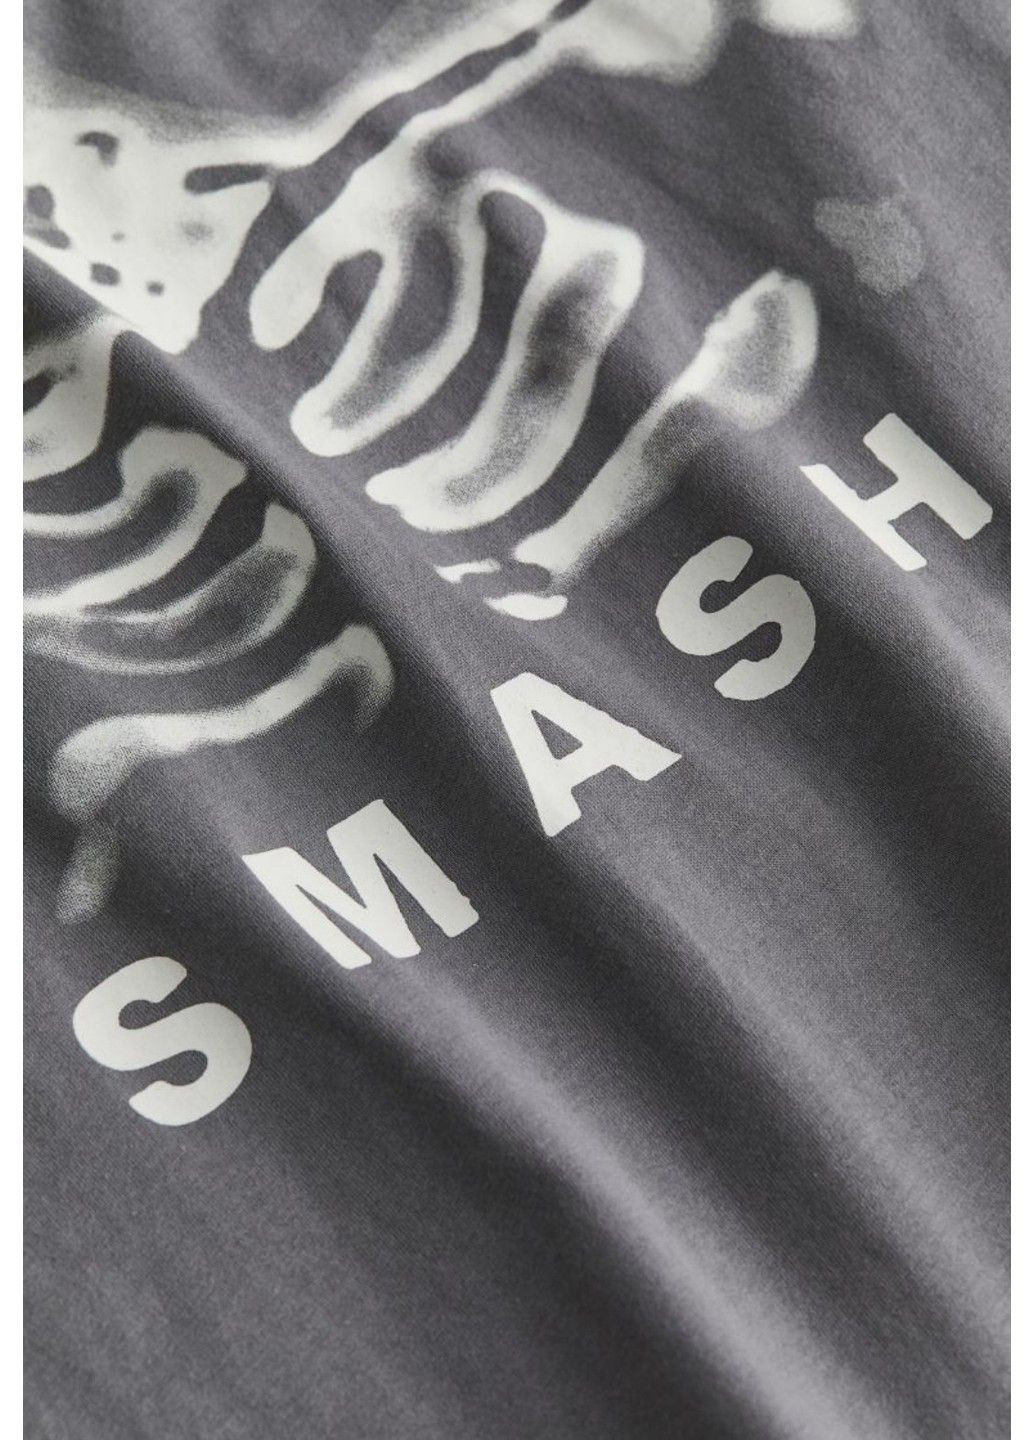 Серая летняя женская футболка оверсайз с принтом н&м (56919) xs серая H&M